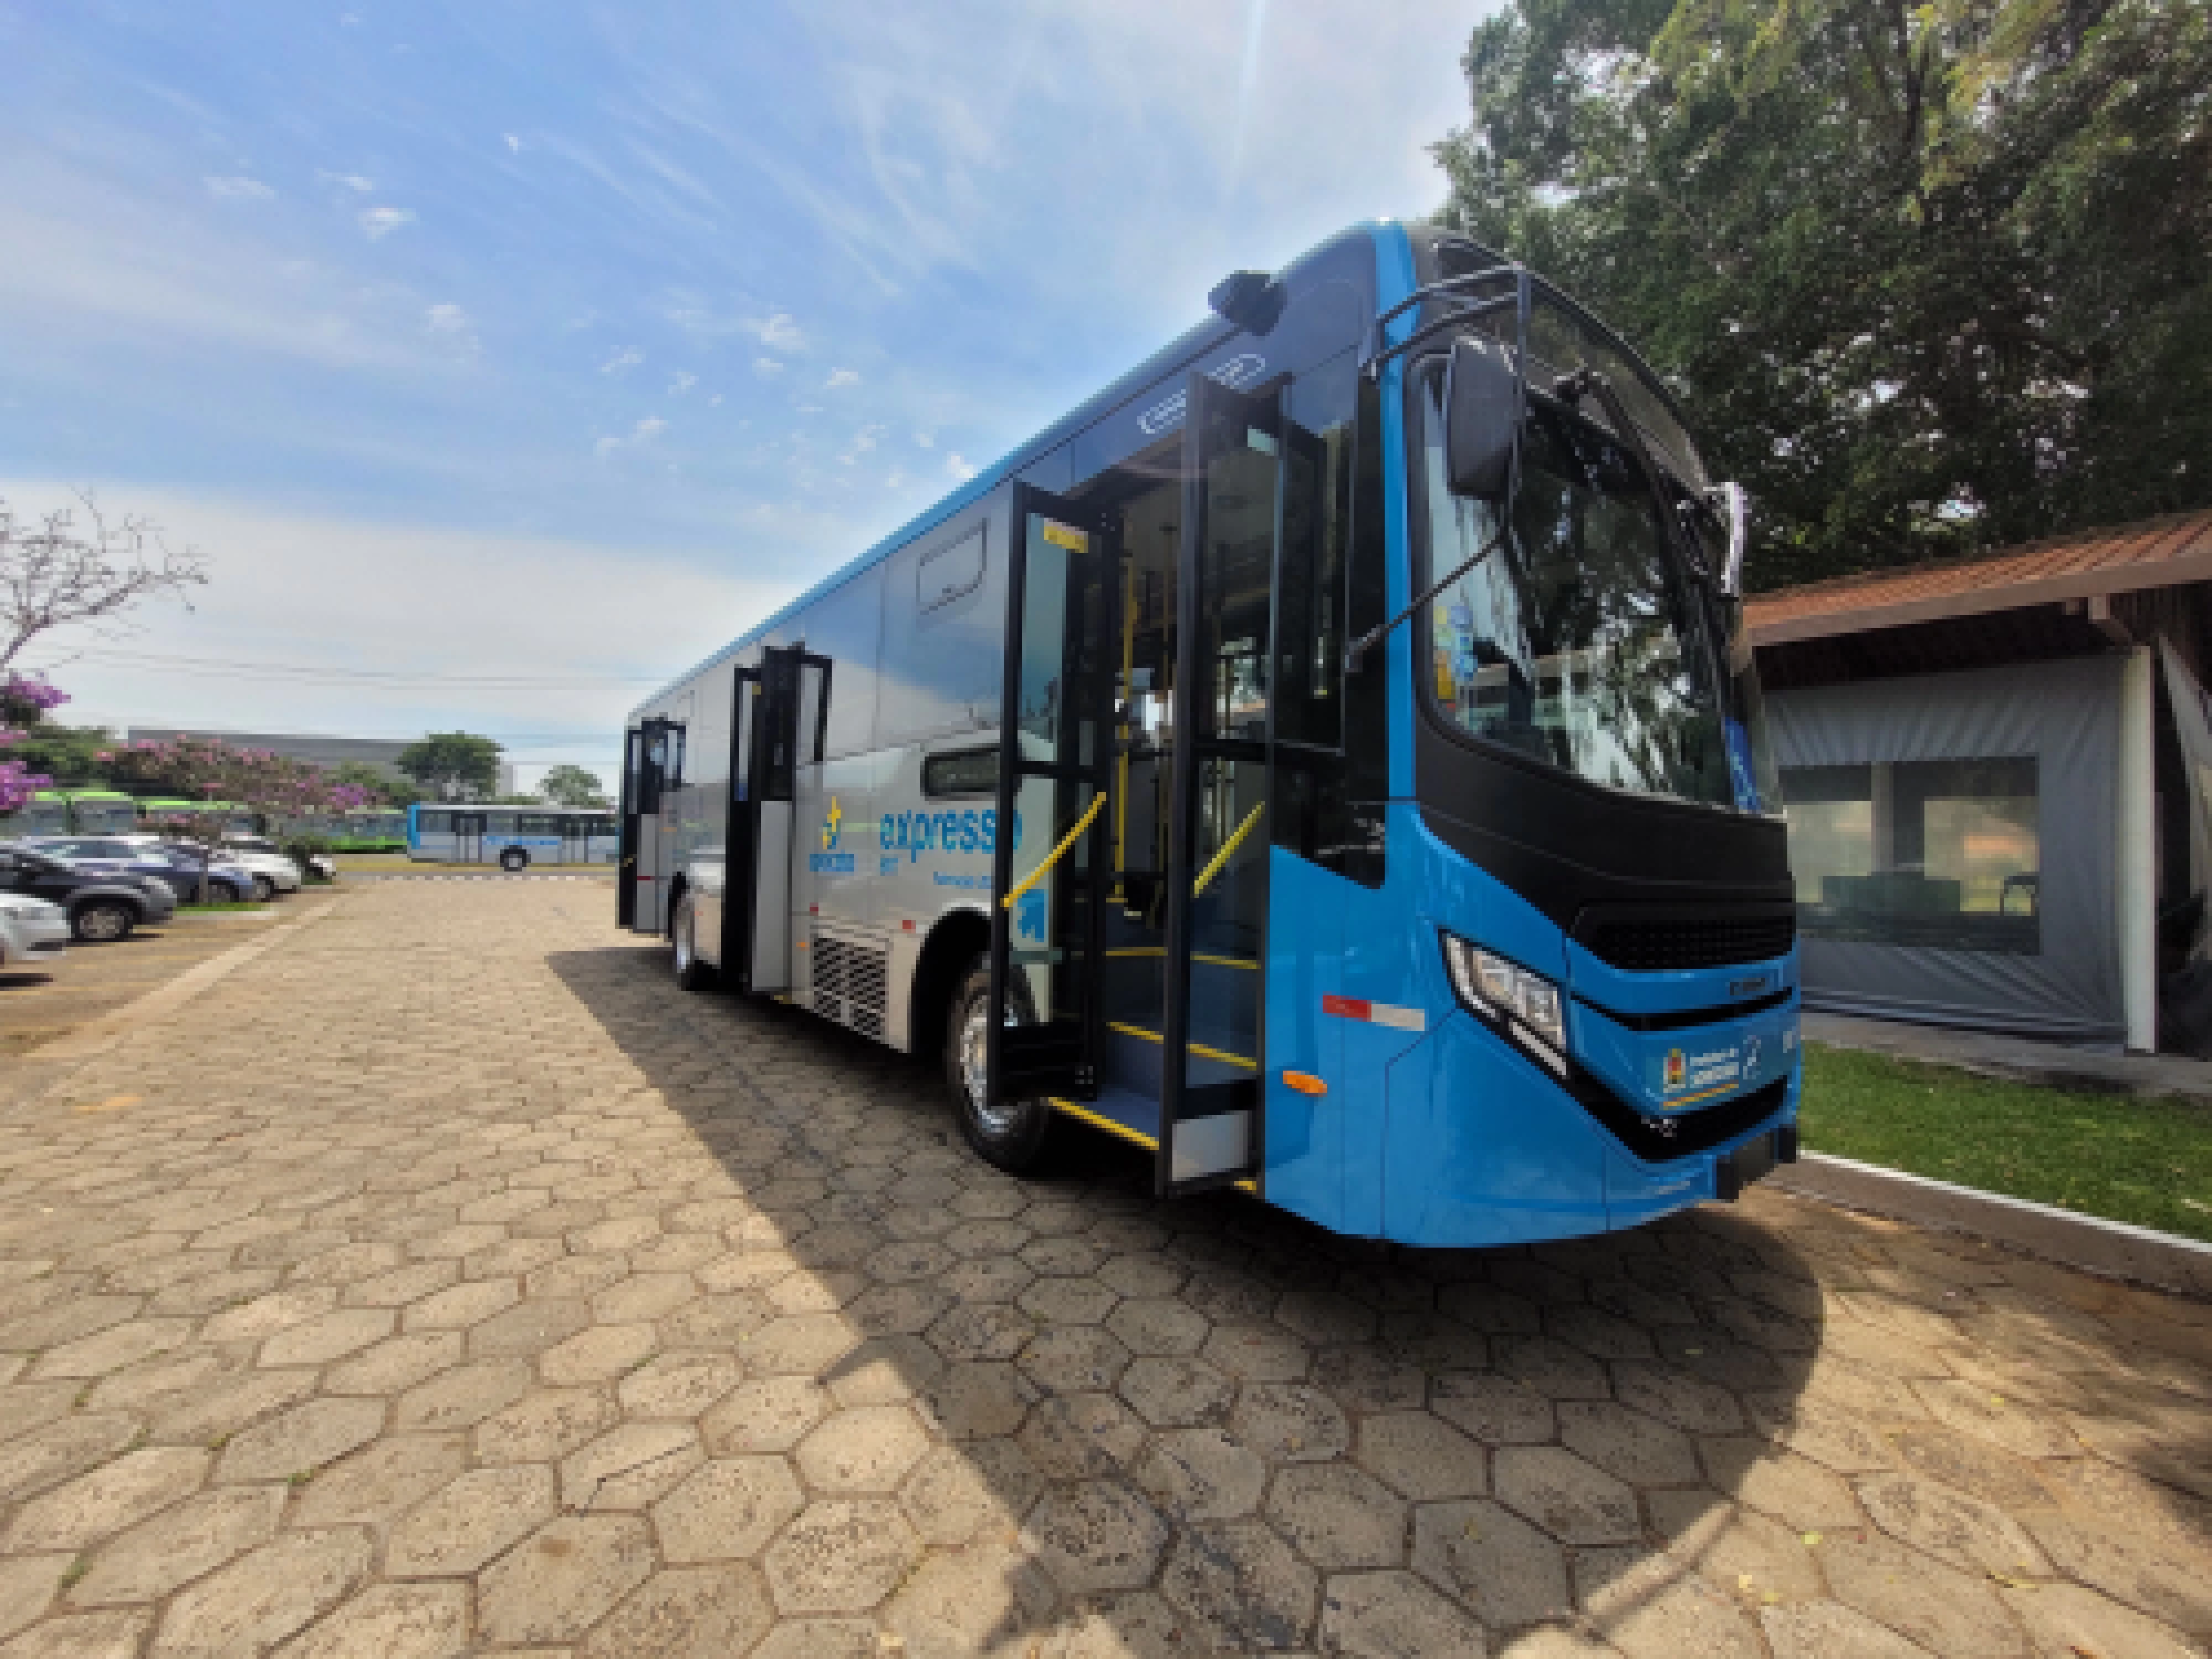 BRT Sorocaba conclui projeto e Corredor Estrutural Oeste inicia operação neste mês de maio